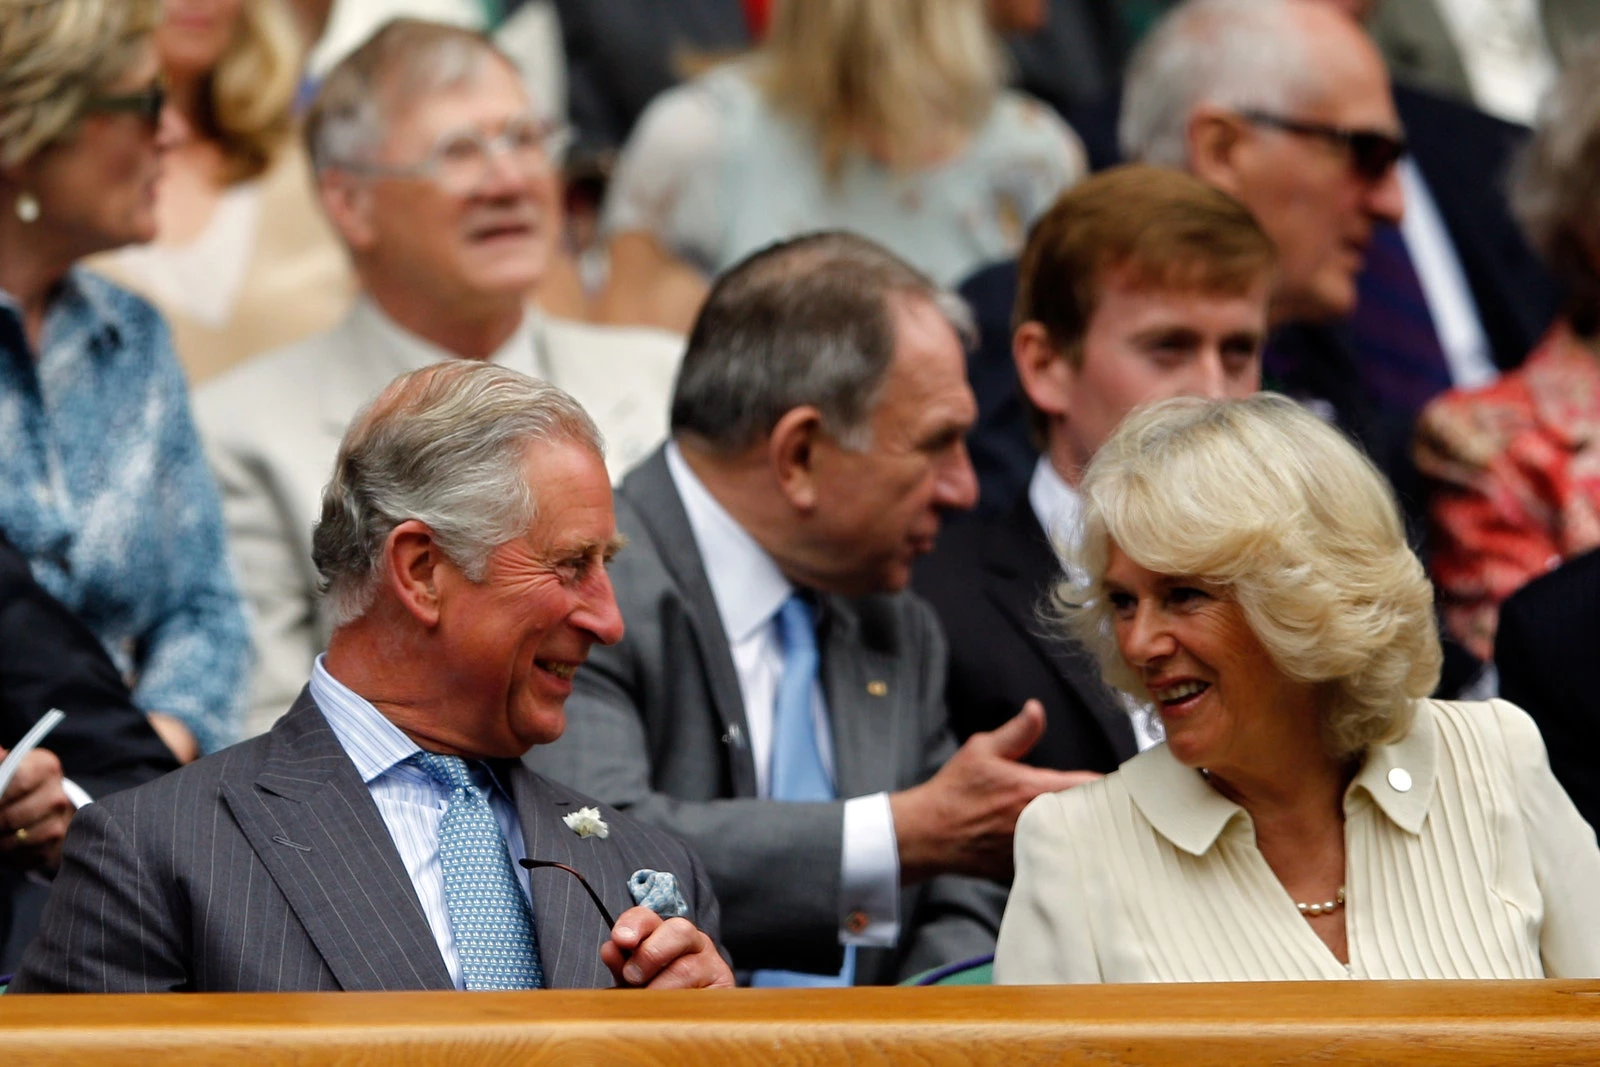 У 2012 році принц Чарльз і Камілла, герцогиня Корнуольська, зайняли місця в королівській ложі, спостерігаючи за матчем другого раунду між Роджером Федерером і Фабіо Фоньїні.